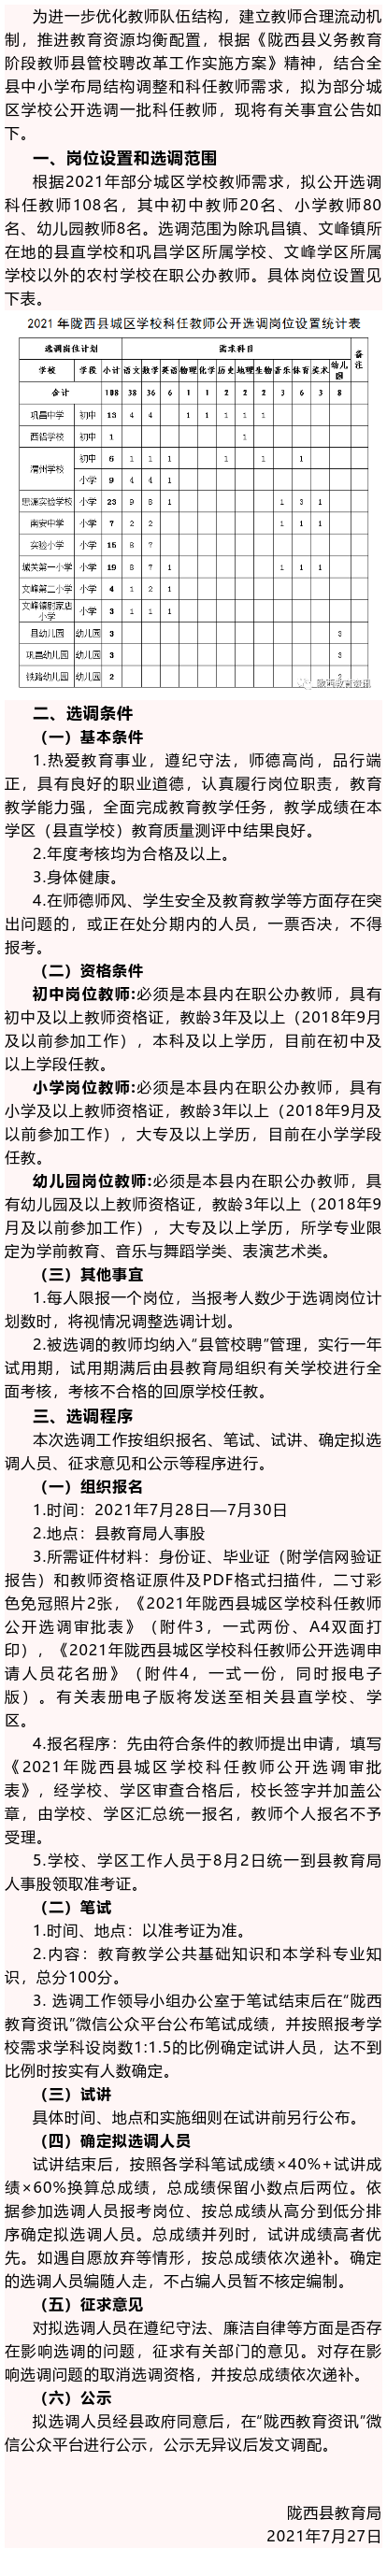 陇西县2021年城区学校科任教师公开选调公告